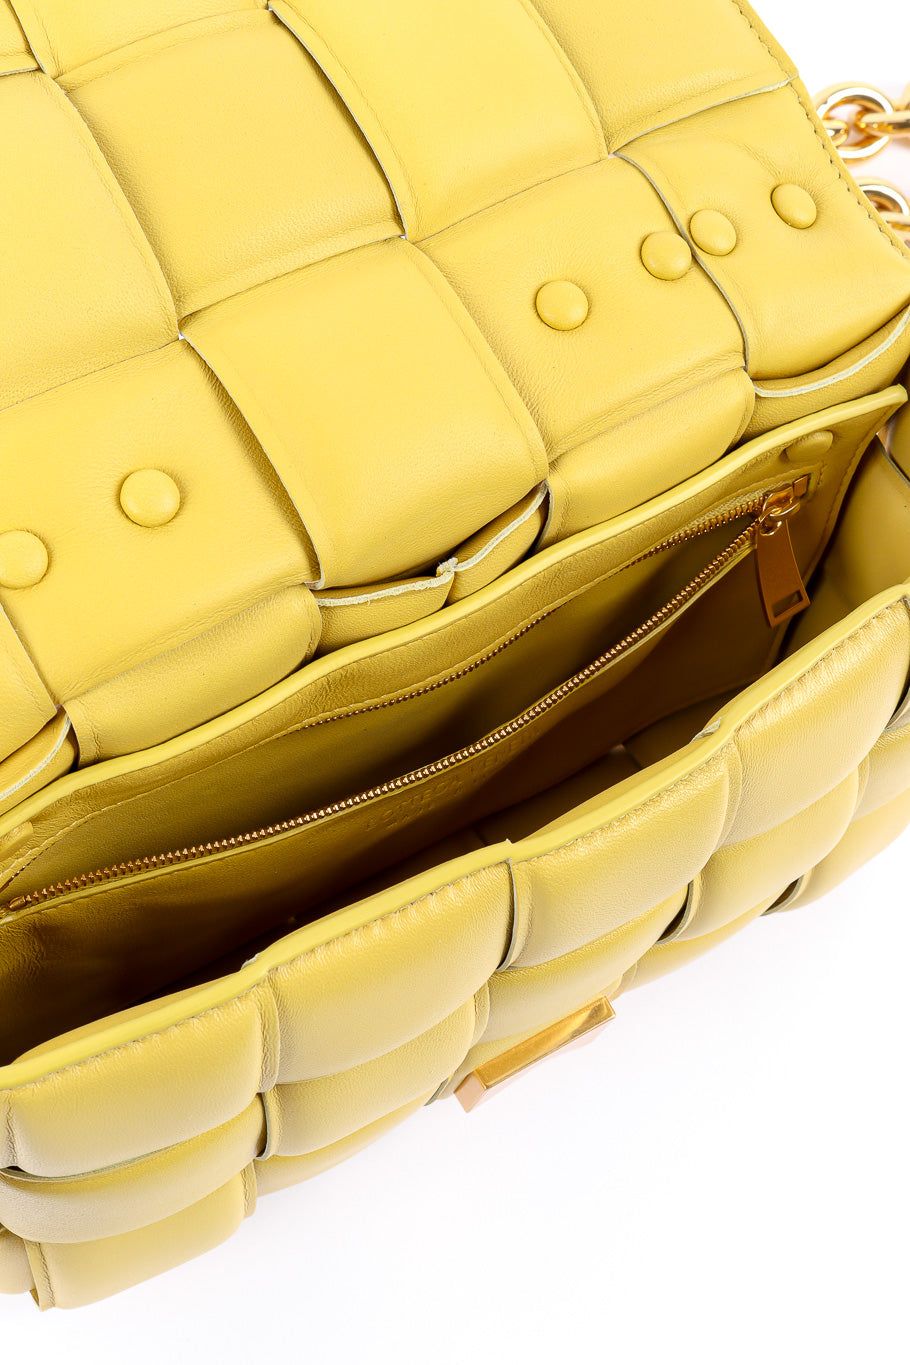 Bottega Veneta padded leather bag inside zipper @recessla